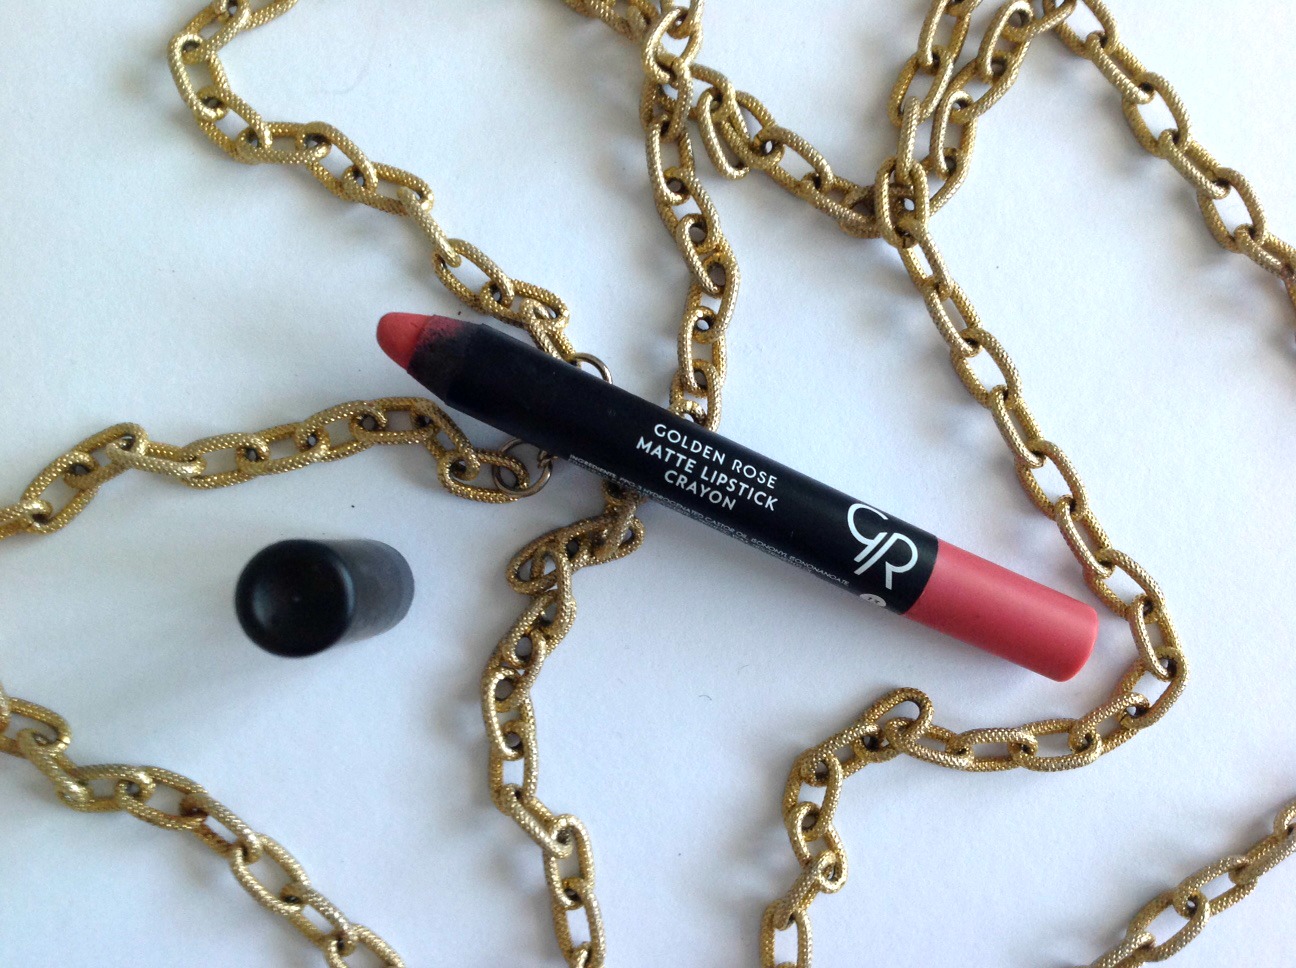 Golden Rose Matte lipstick crayon